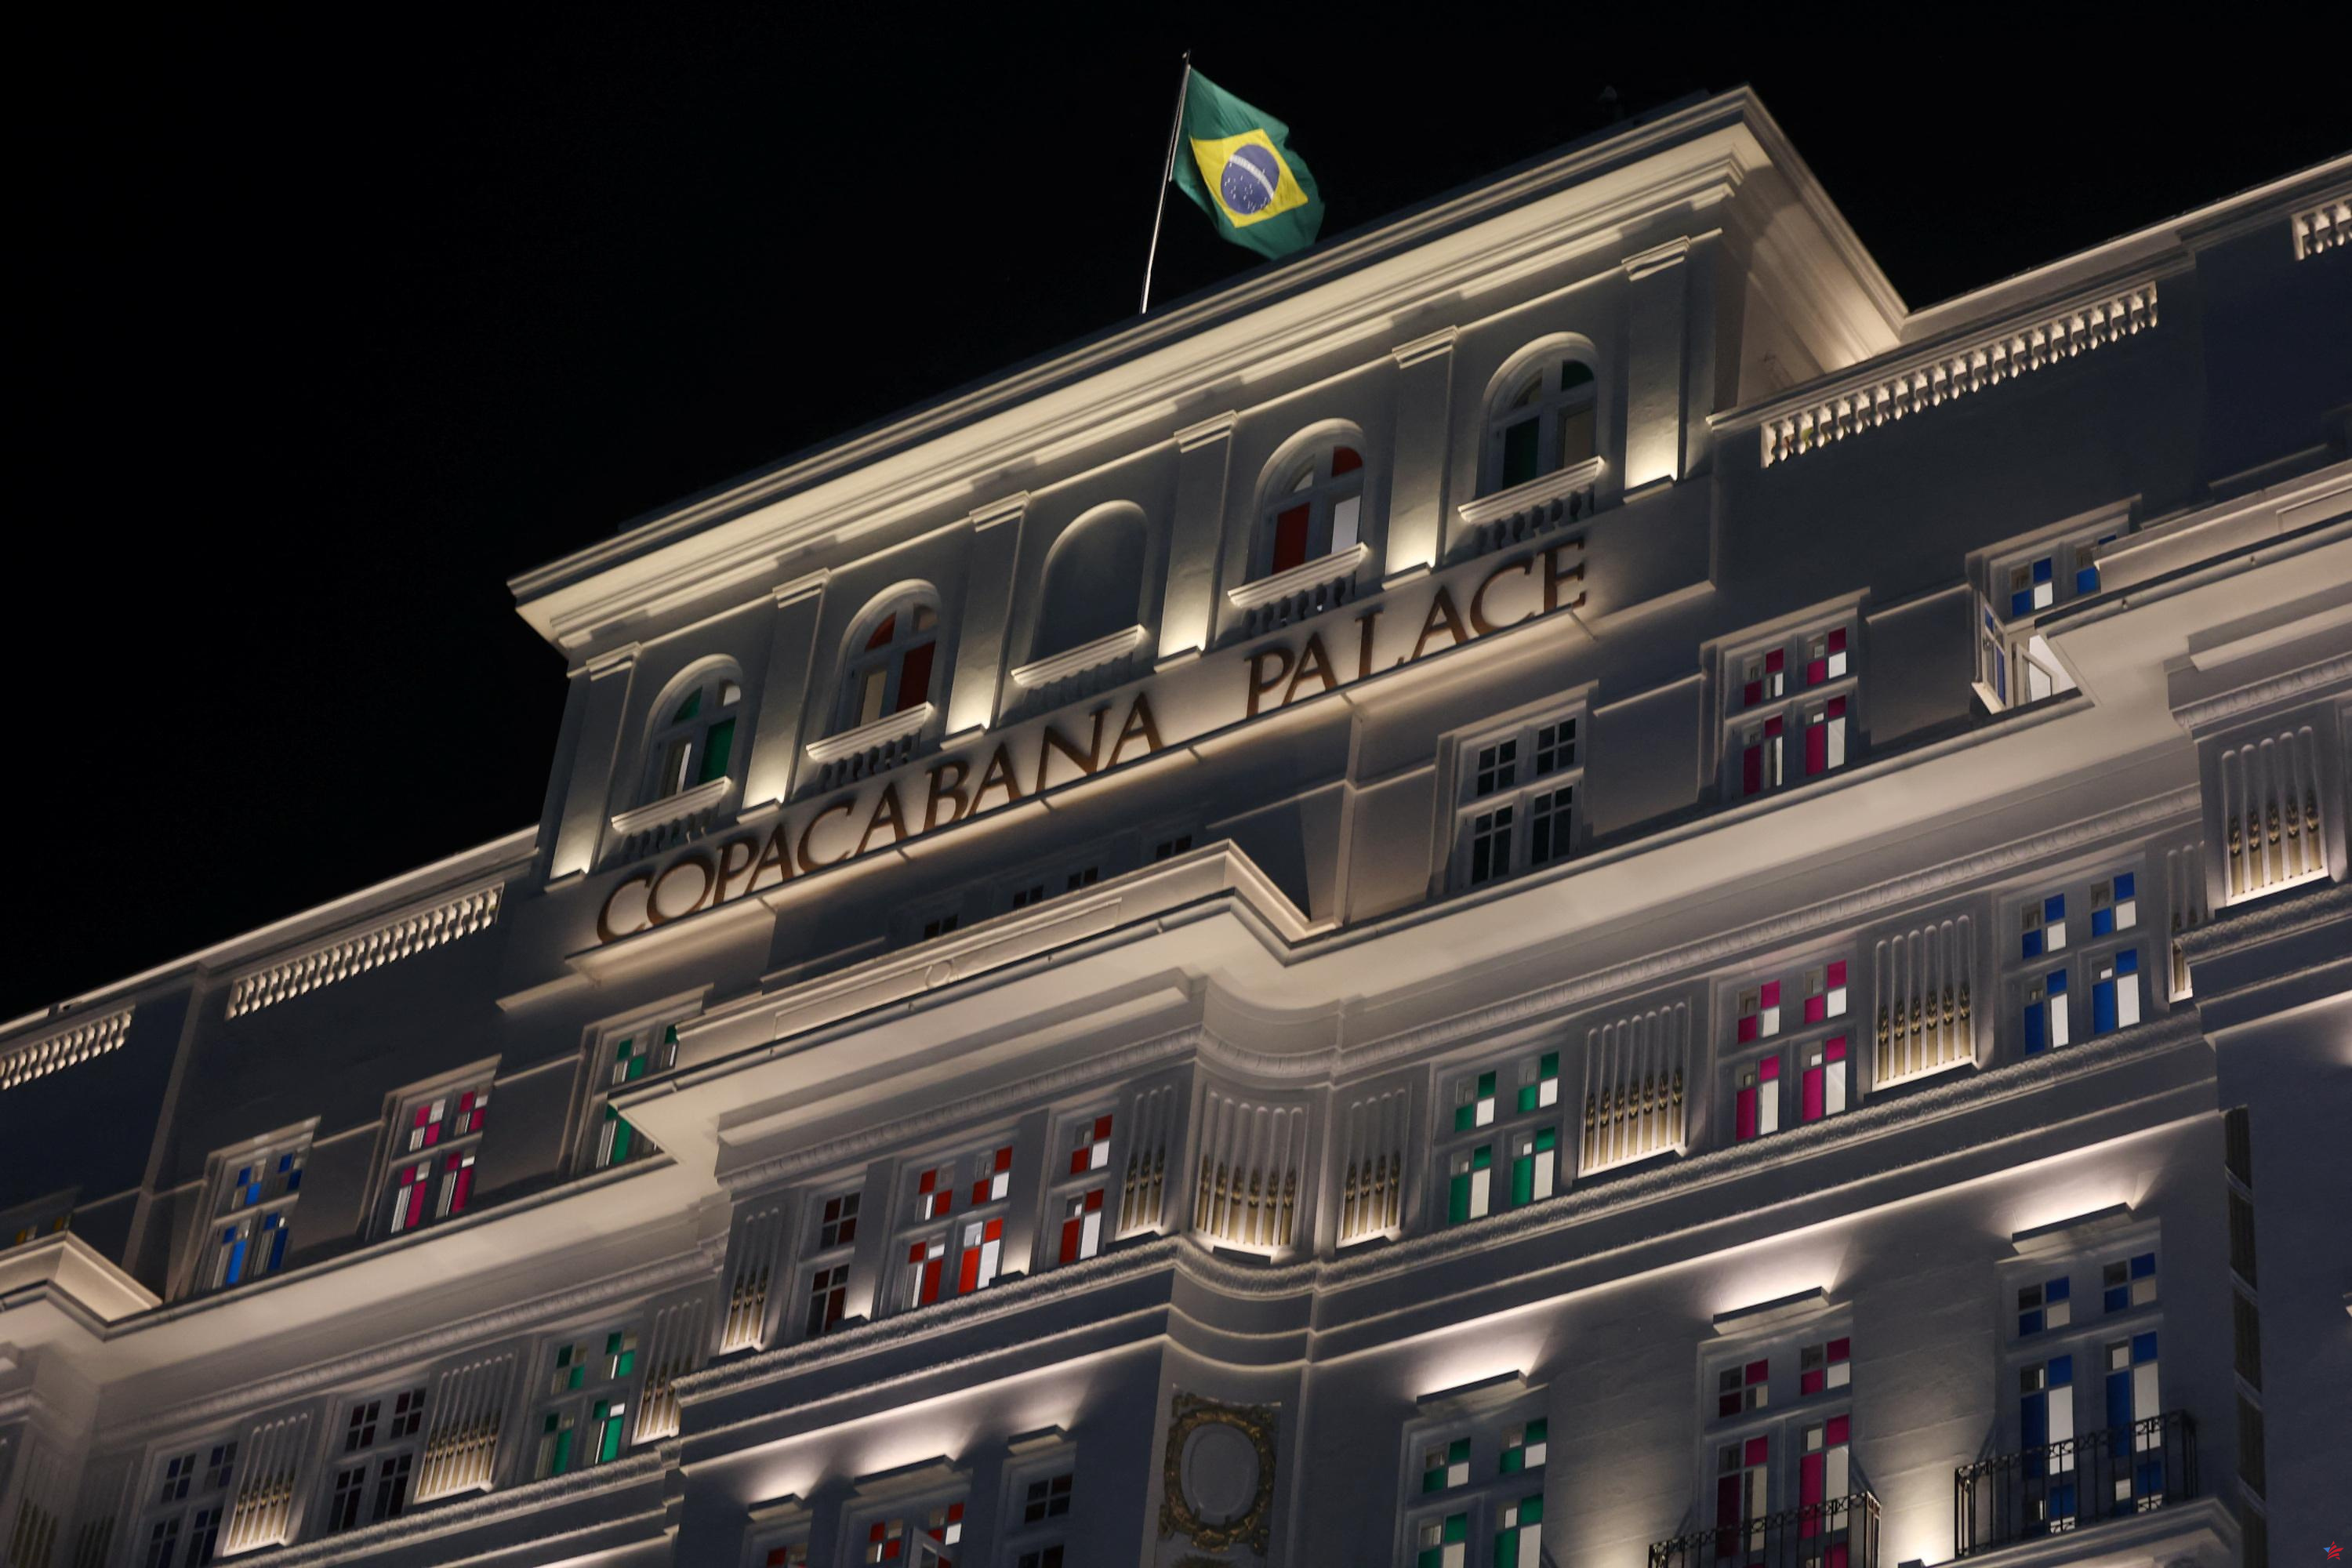 Daniel Buren ofrece una nueva cara al icónico Palacio de Copacabana